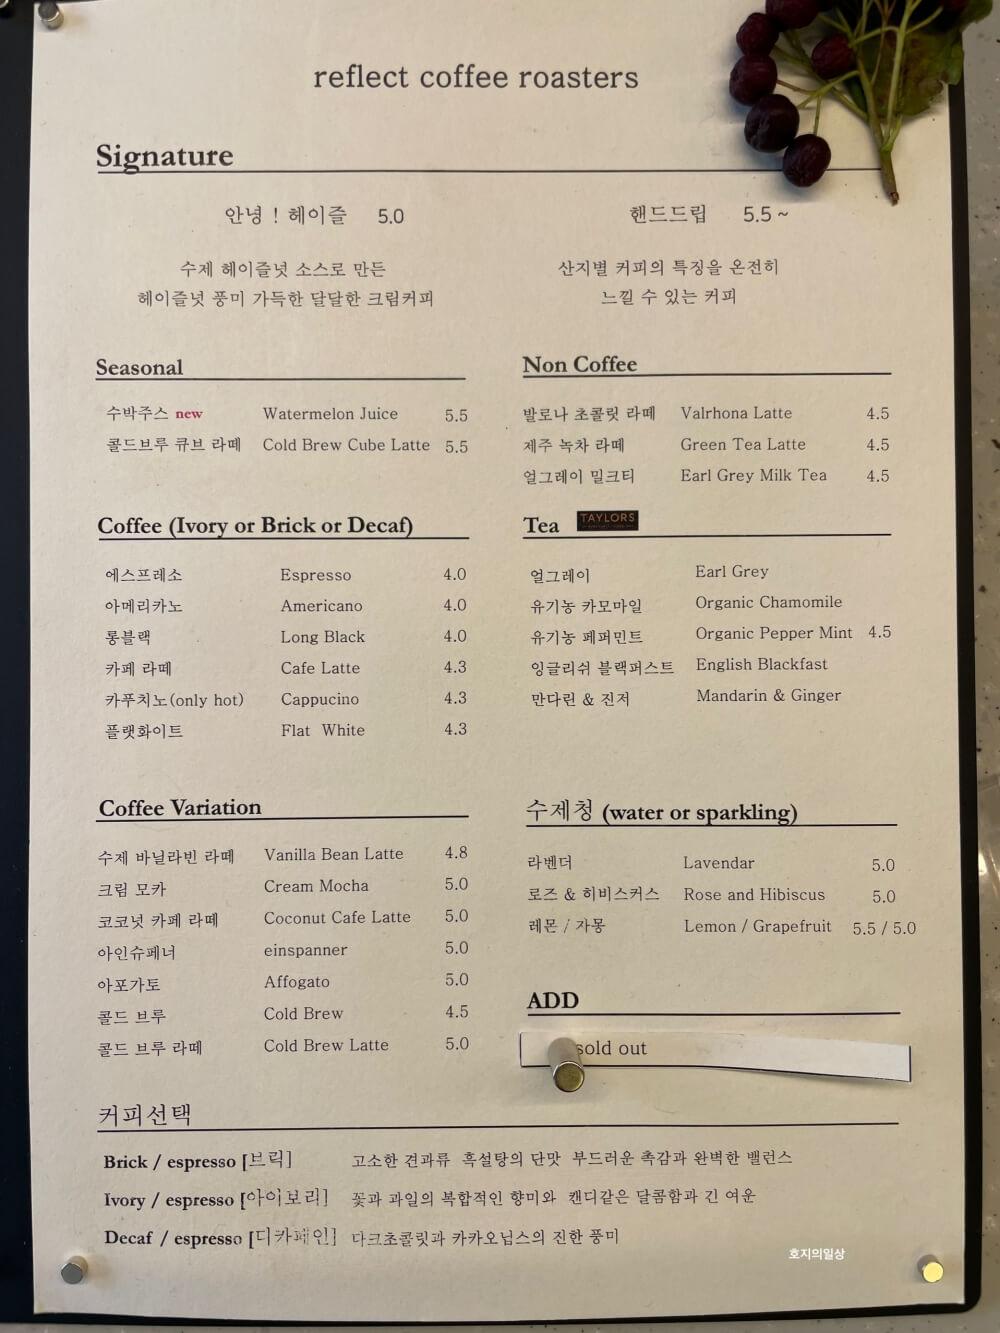 강남 서초동 카페 맛집 리플렉트커피 로스팅 랩 - 메뉴판